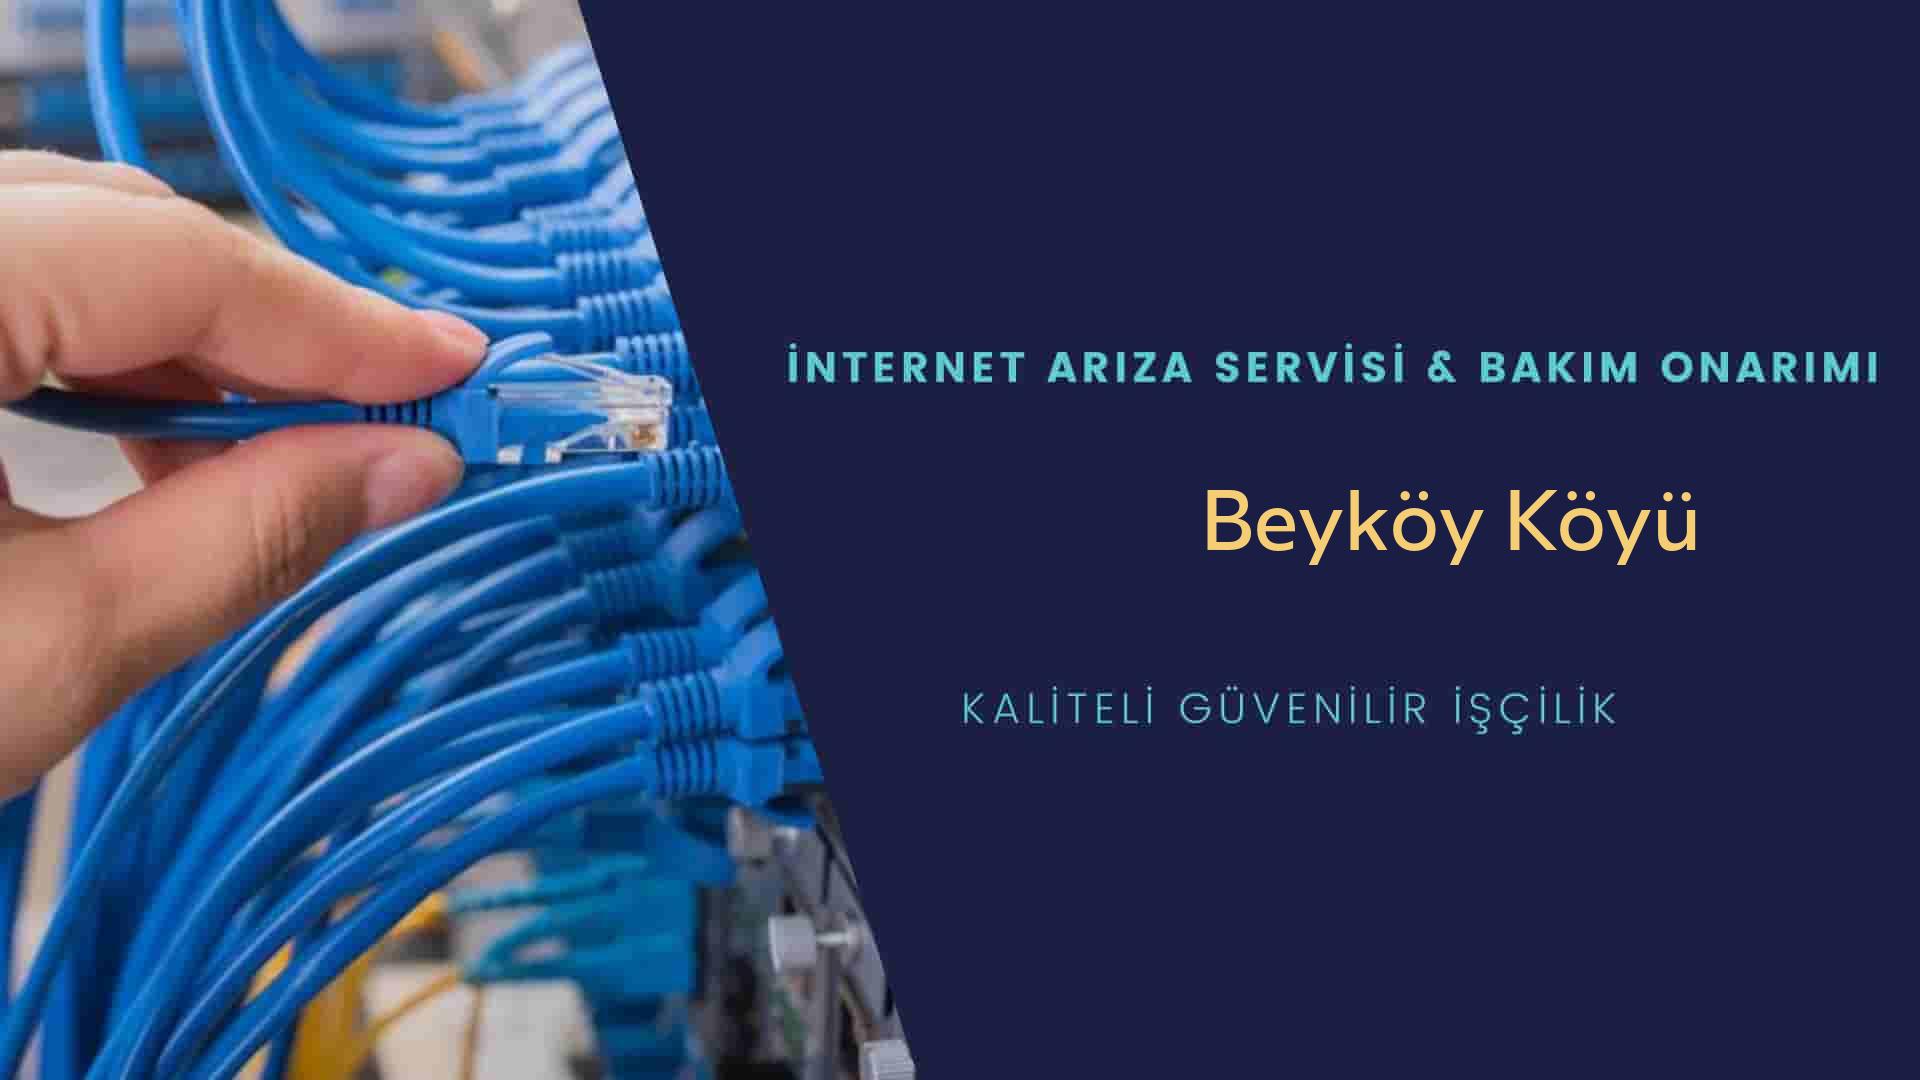 Beyköy Köyü internet kablosu çekimi yapan yerler veya elektrikçiler mi? arıyorsunuz doğru yerdesiniz o zaman sizlere 7/24 yardımcı olacak profesyonel ustalarımız bir telefon kadar yakındır size.